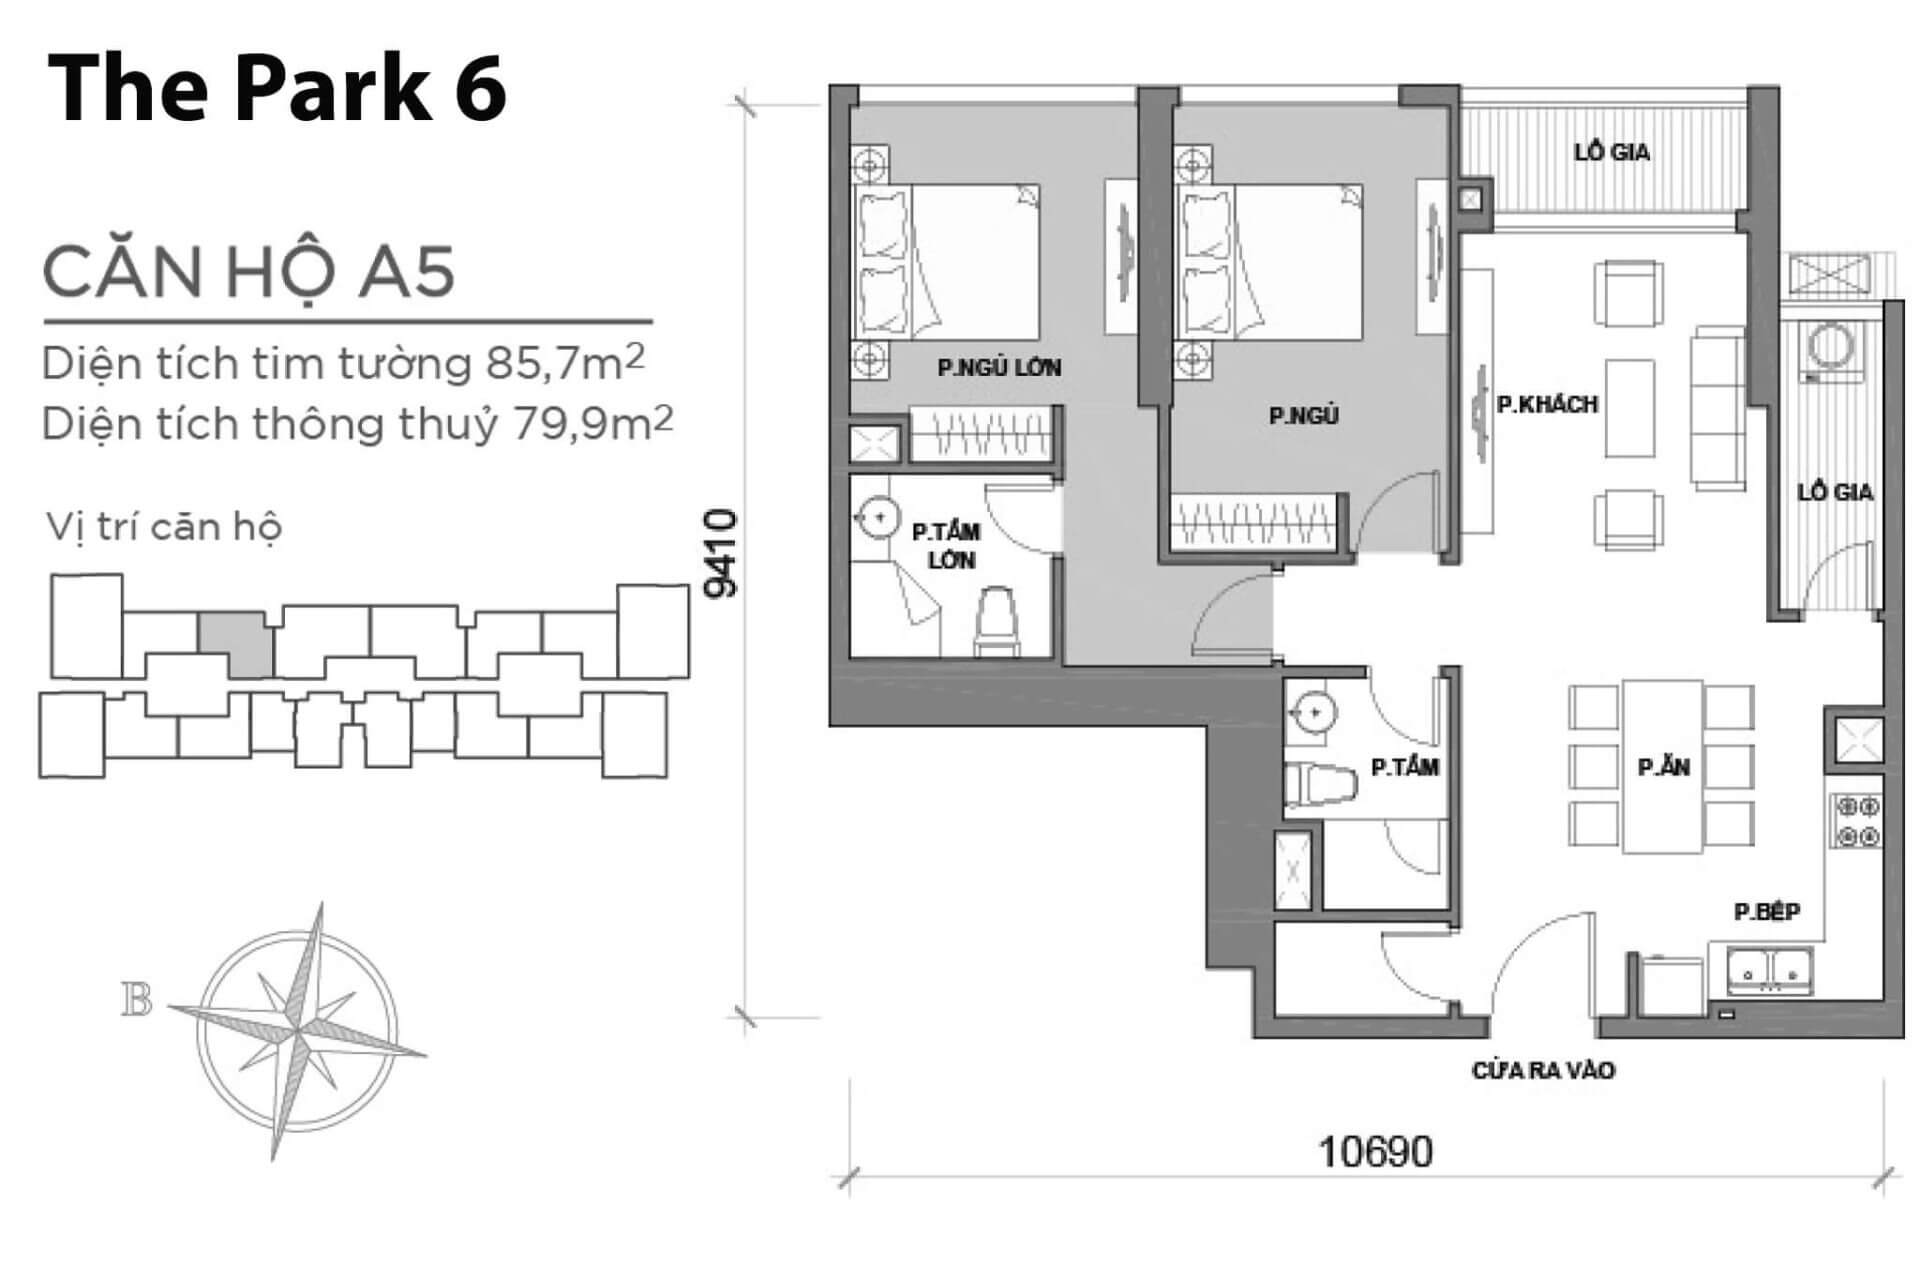 mặt bằng layout Park 6 căn hộ A5 P6A-05